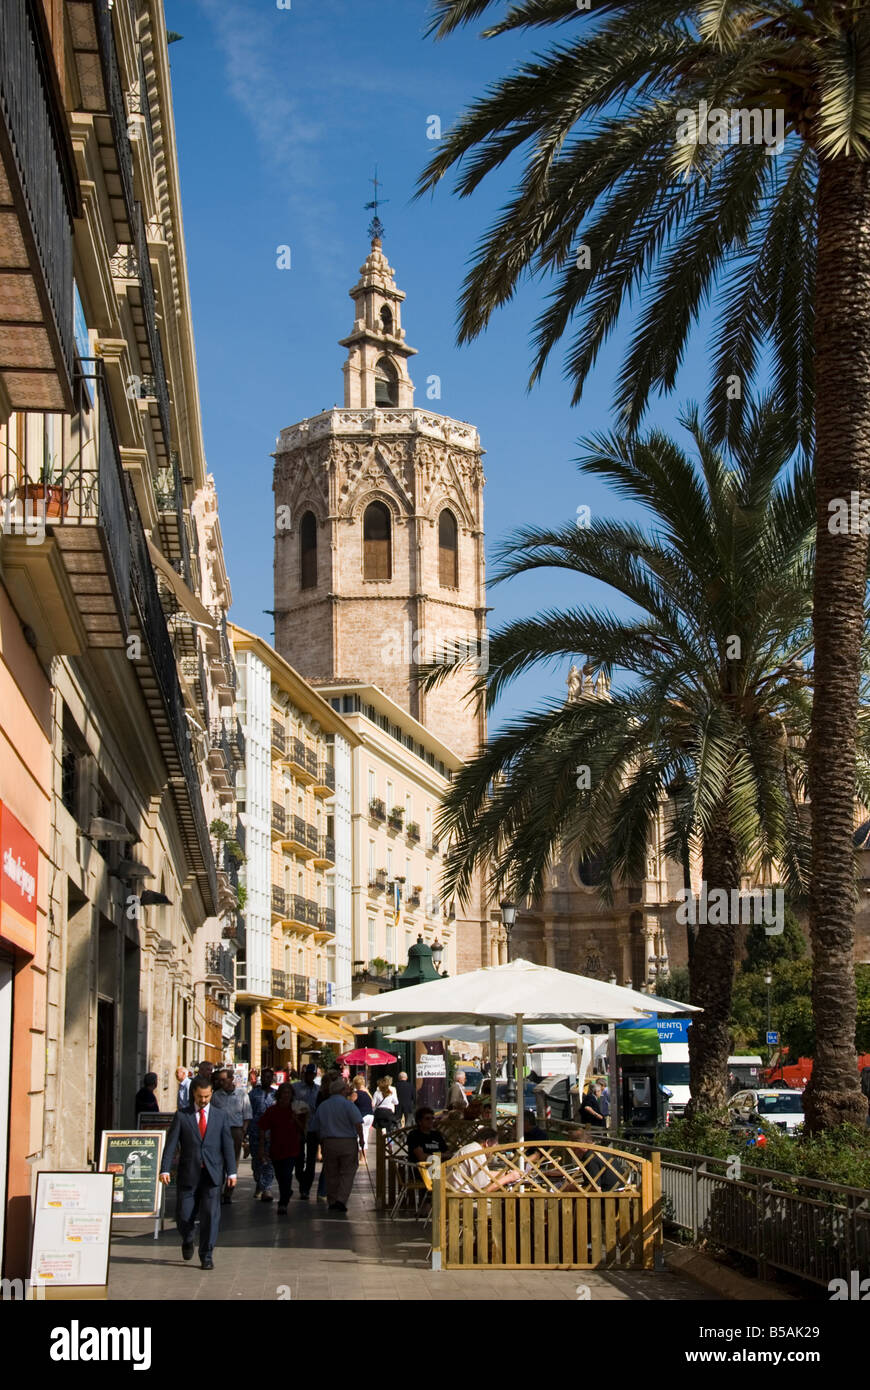 La cathédrale Miguelete Bell Tower sur la place de la Reine dans le centre-ville historique de Valence Espagne Banque D'Images